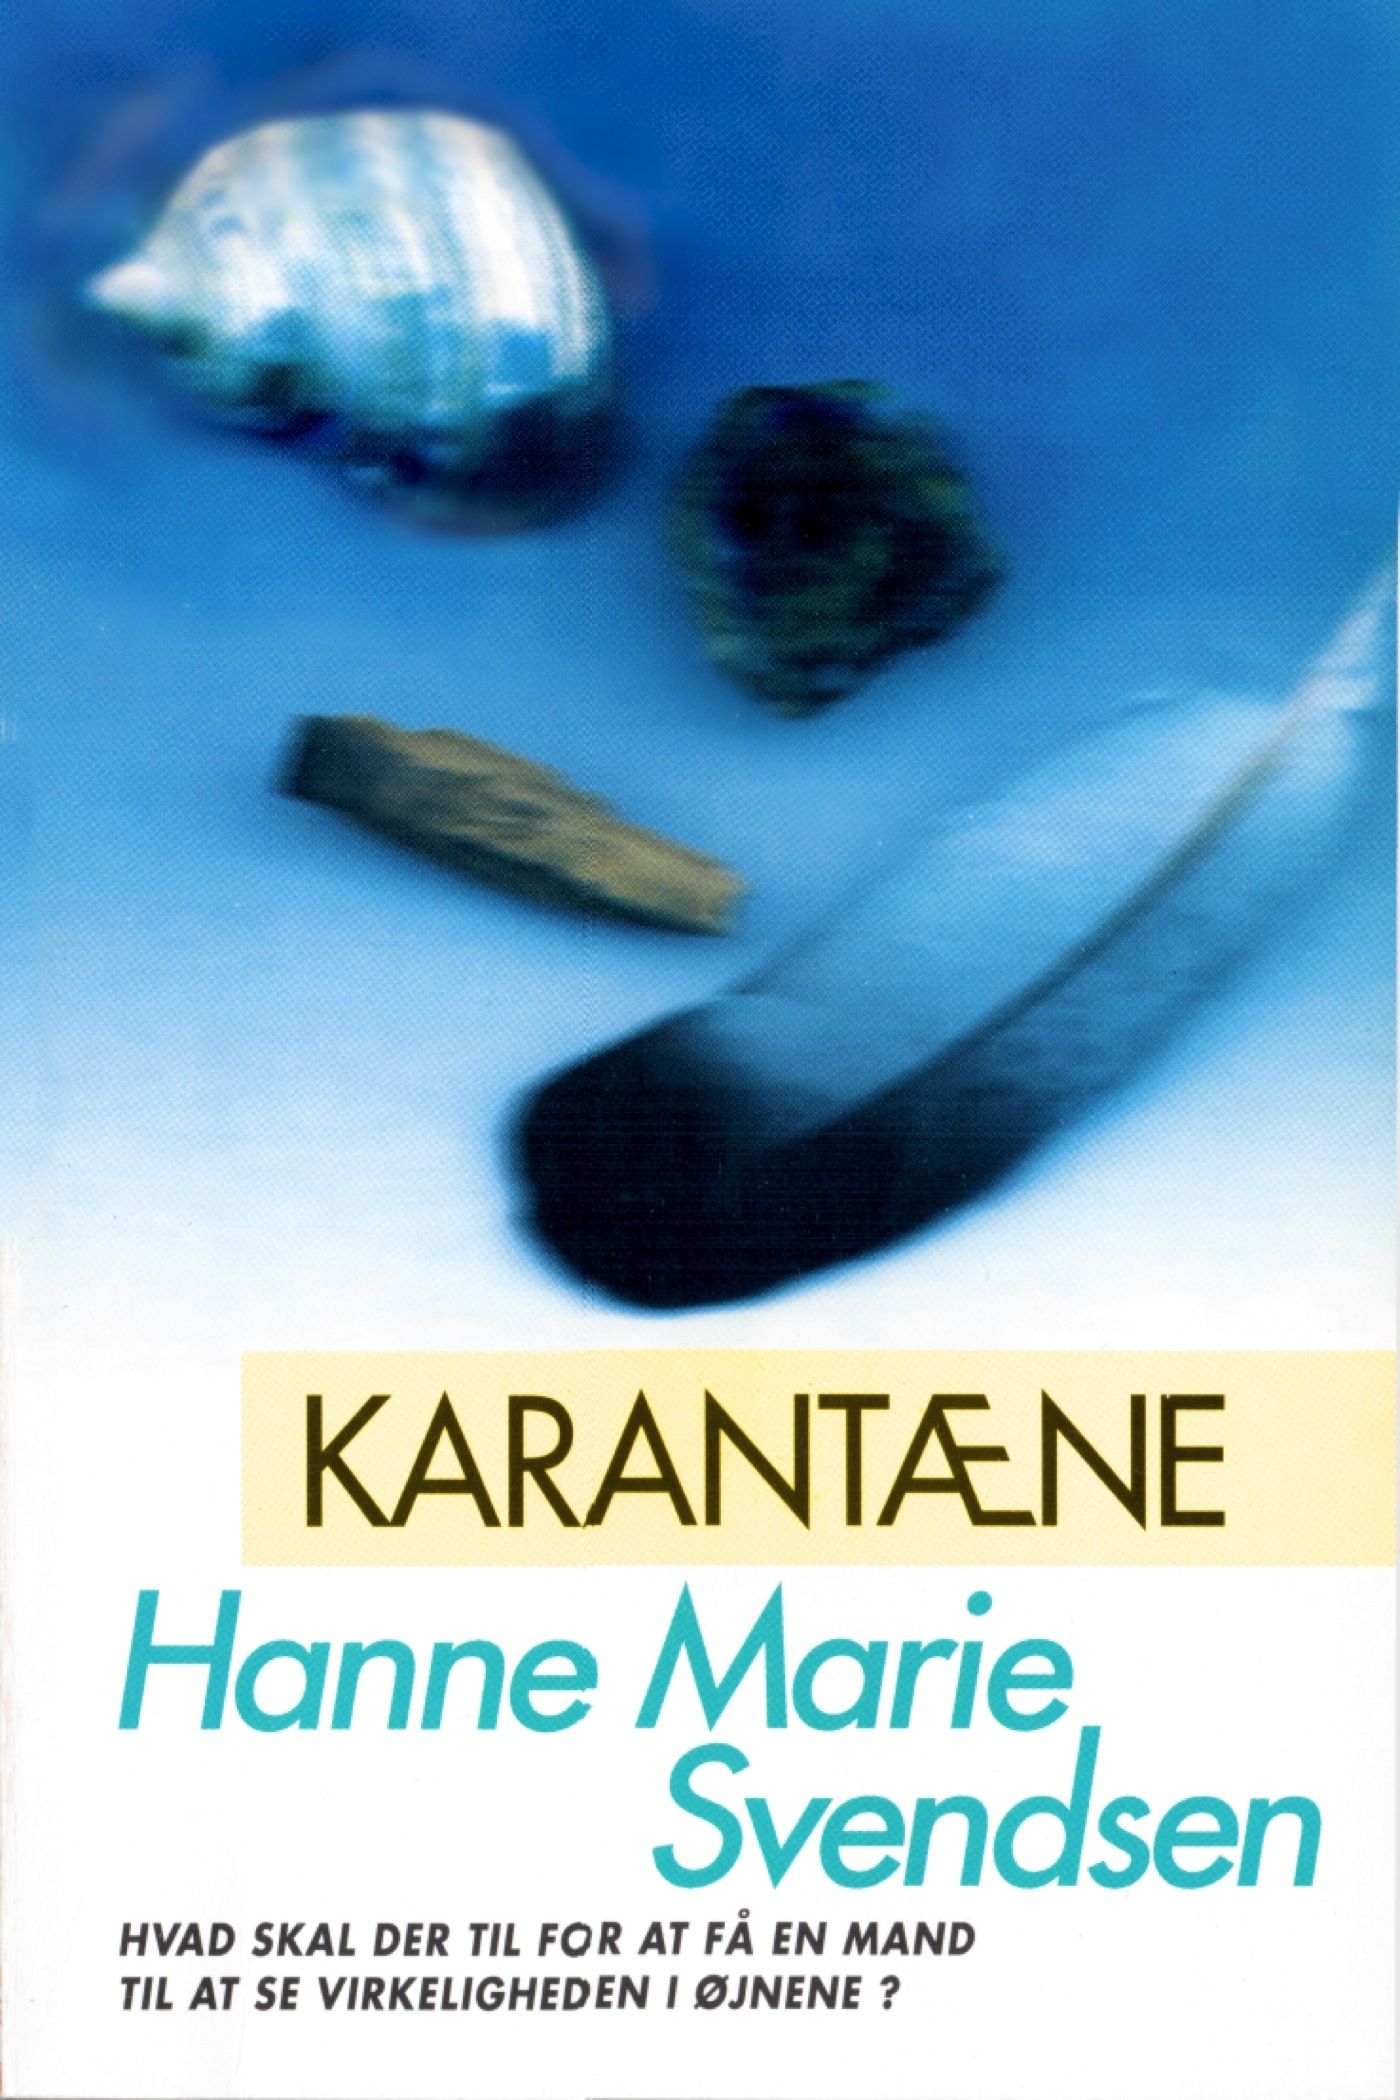 Karantæne, eBook by Hanne Marie Svendsen